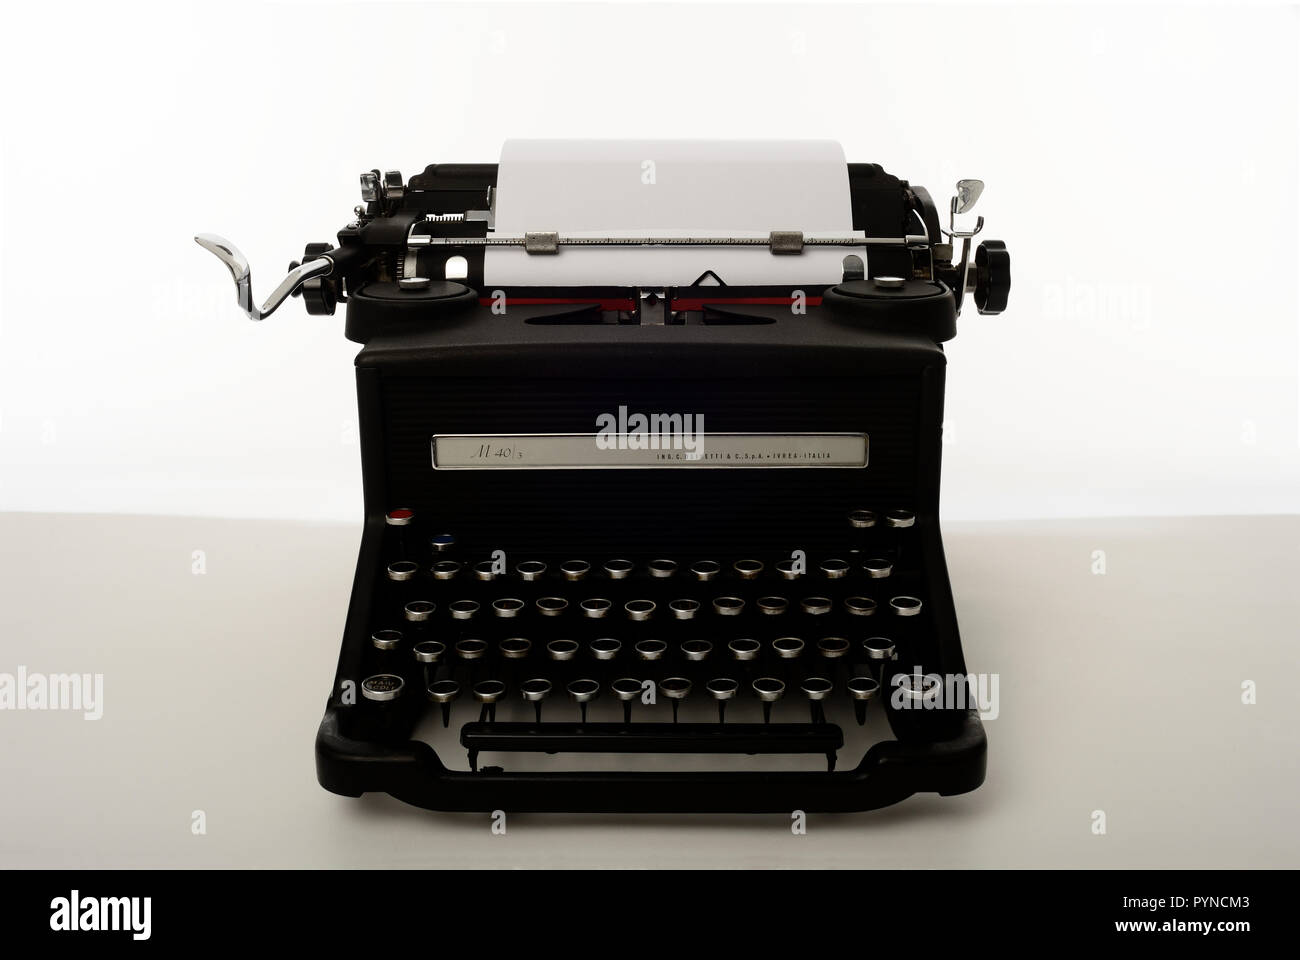 Alte antike Schreibmaschine 1930 olivetti M 40/3 weiß/grauer Hintergrund,  macchina da Scrivere antica Anni 30 Stockfotografie - Alamy